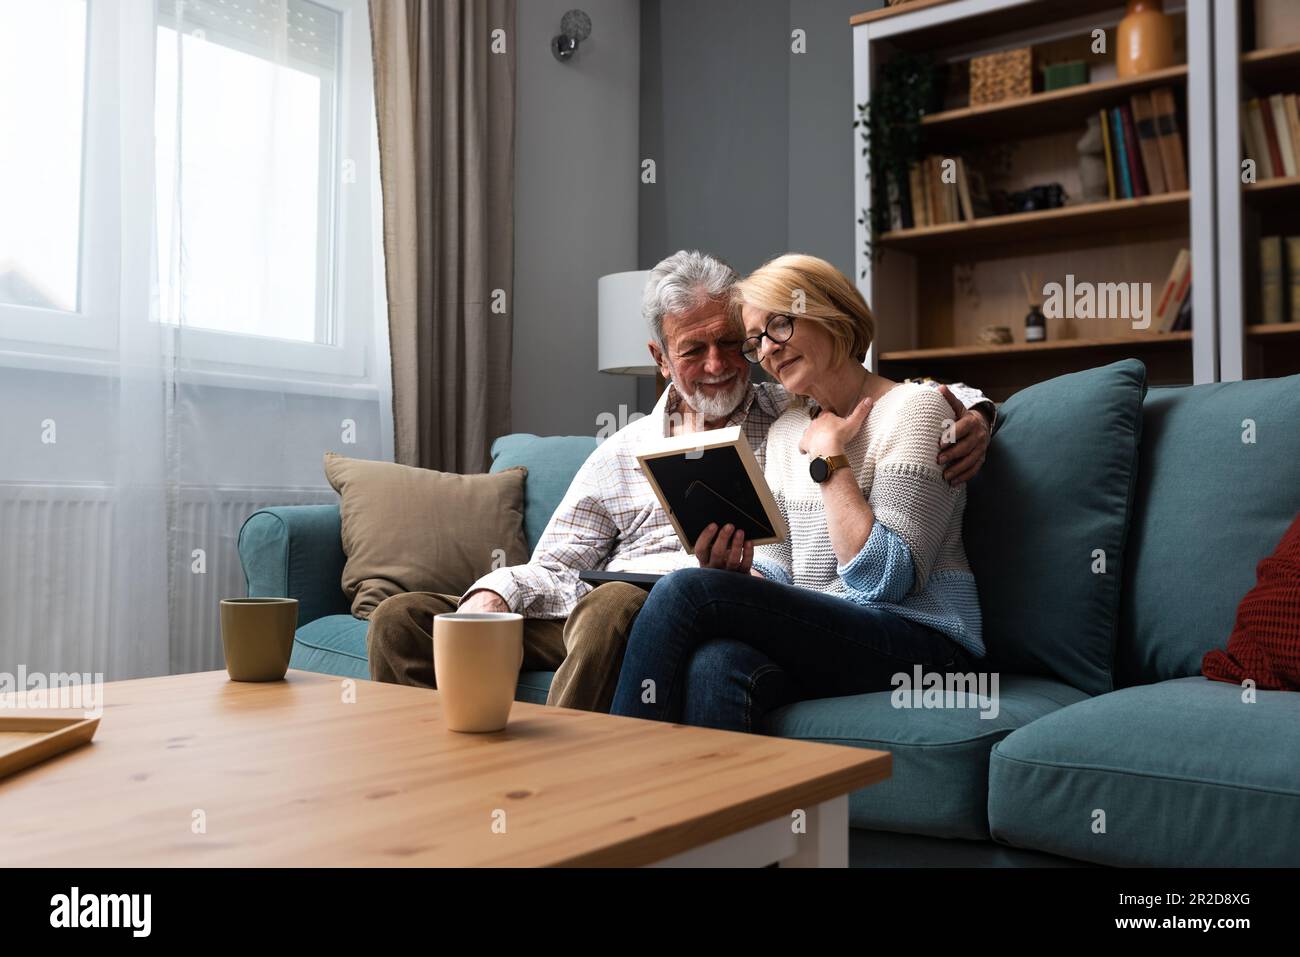 Zwei ältere Leute, ein älteres Paar, Mann und Frau, die ein Familienfoto ansehen, lächeln und umarmen, während sie zu Hause auf dem Sofa sitzen. Erinnerungen und Nostalgie für das Kind Stockfoto